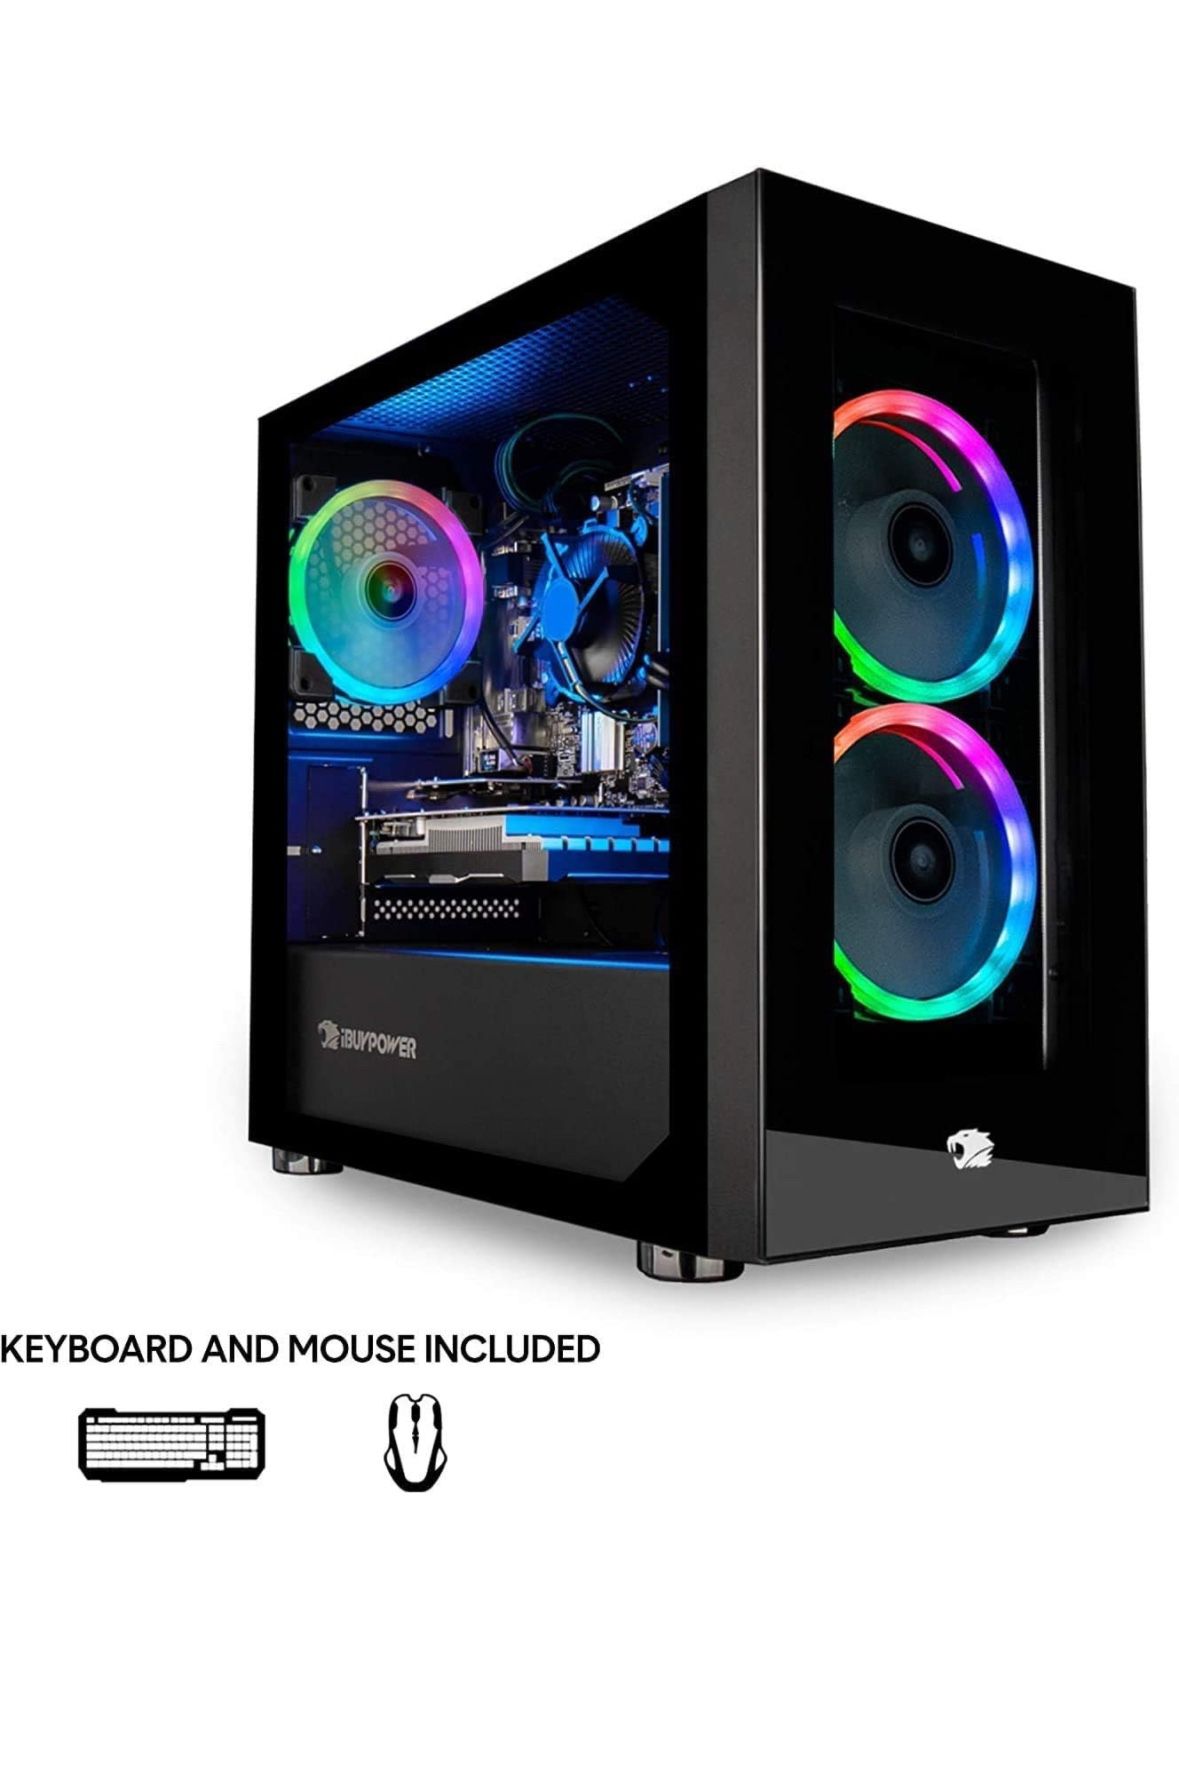 iBUYPOWER Gaming PC Computer Mini Desktop (AMD Ryzen 3 3100 3.6GHz, AMD Radeon RX 550 2GB, 8GB DDR4 RAM, 240GB SSD,WiFi Ready, Windows 10 Home)